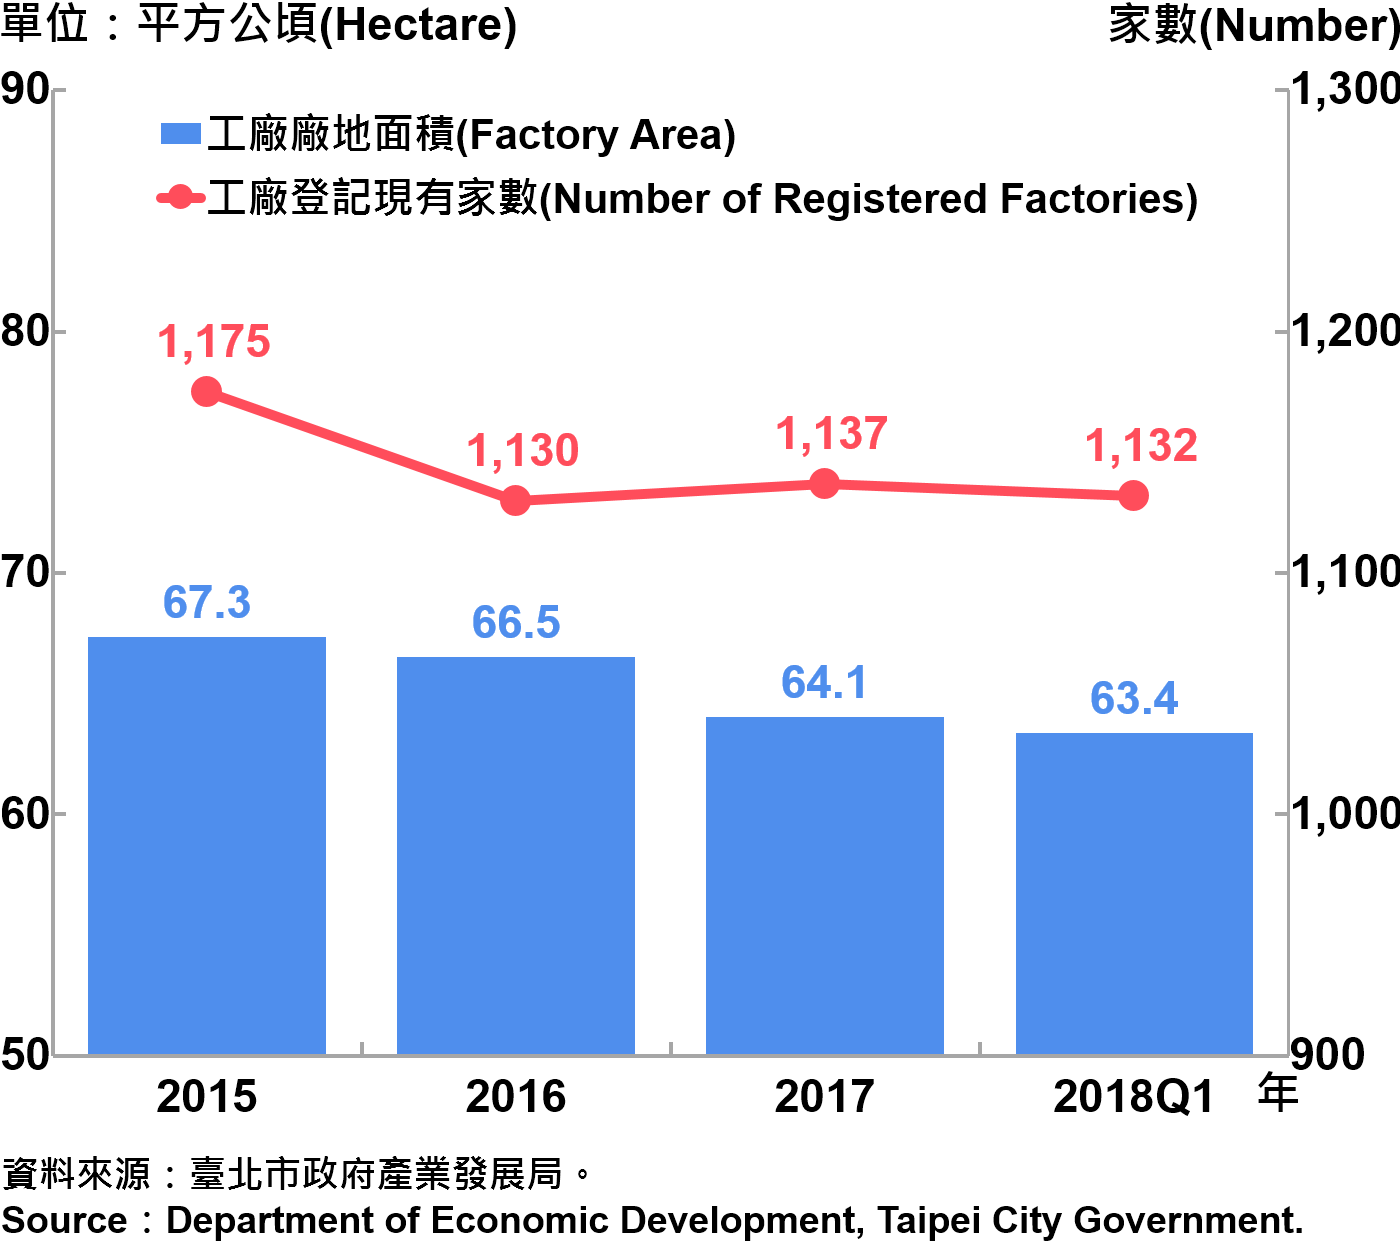 臺北市工廠登記家數及廠地面積—2018Q1 Number of Factories Registered and Factory Lands in Taipei—2018Q1